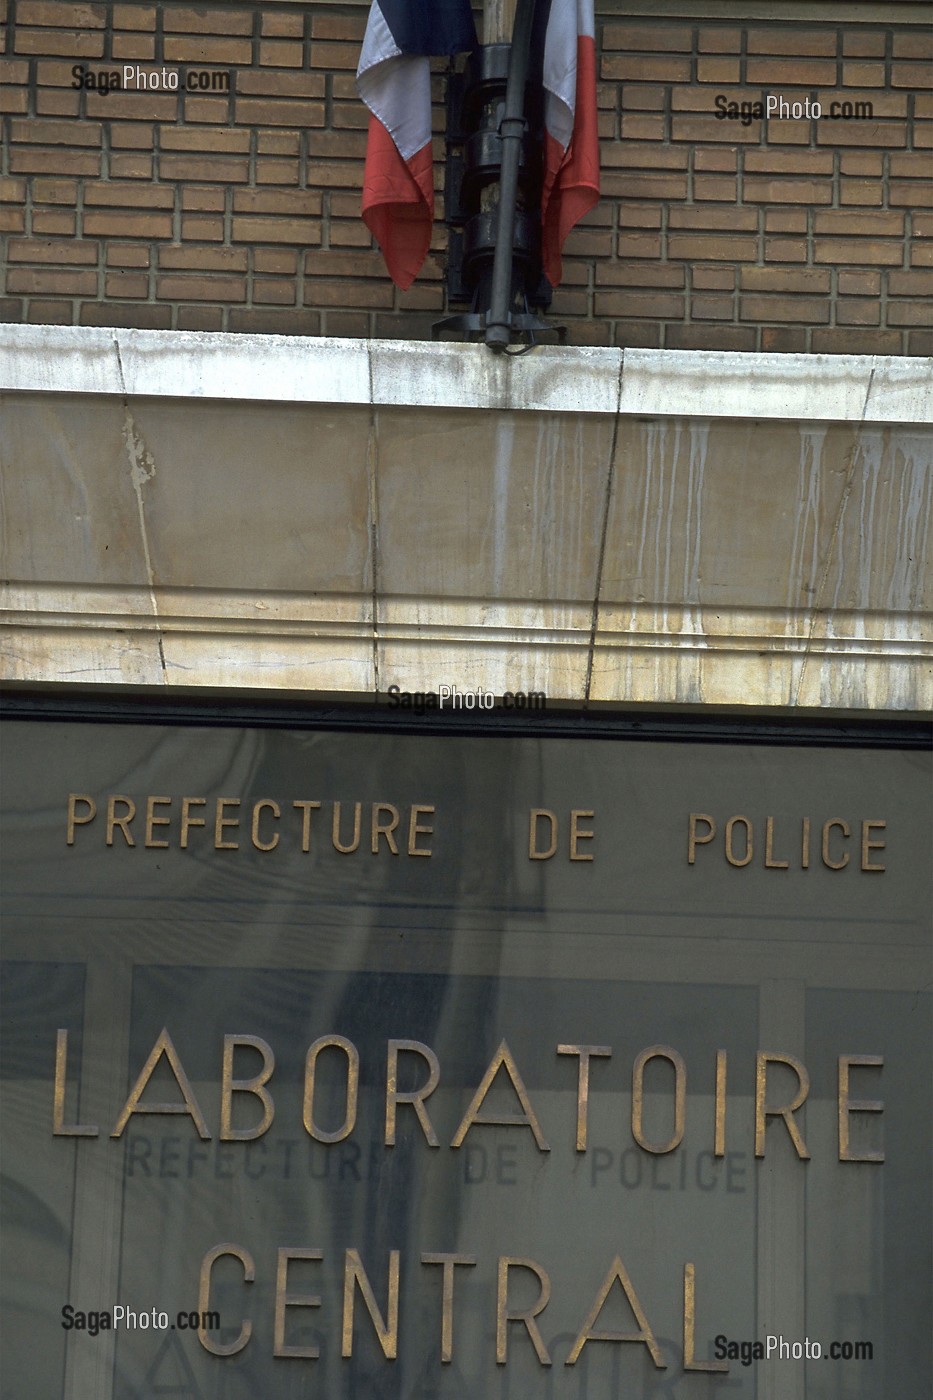 LABORATOIRE CENTRAL DE LA PREFECTURE DE POLICE, RECHERCHE DES CAUSES D'INCENDIE, PARIS (75)  